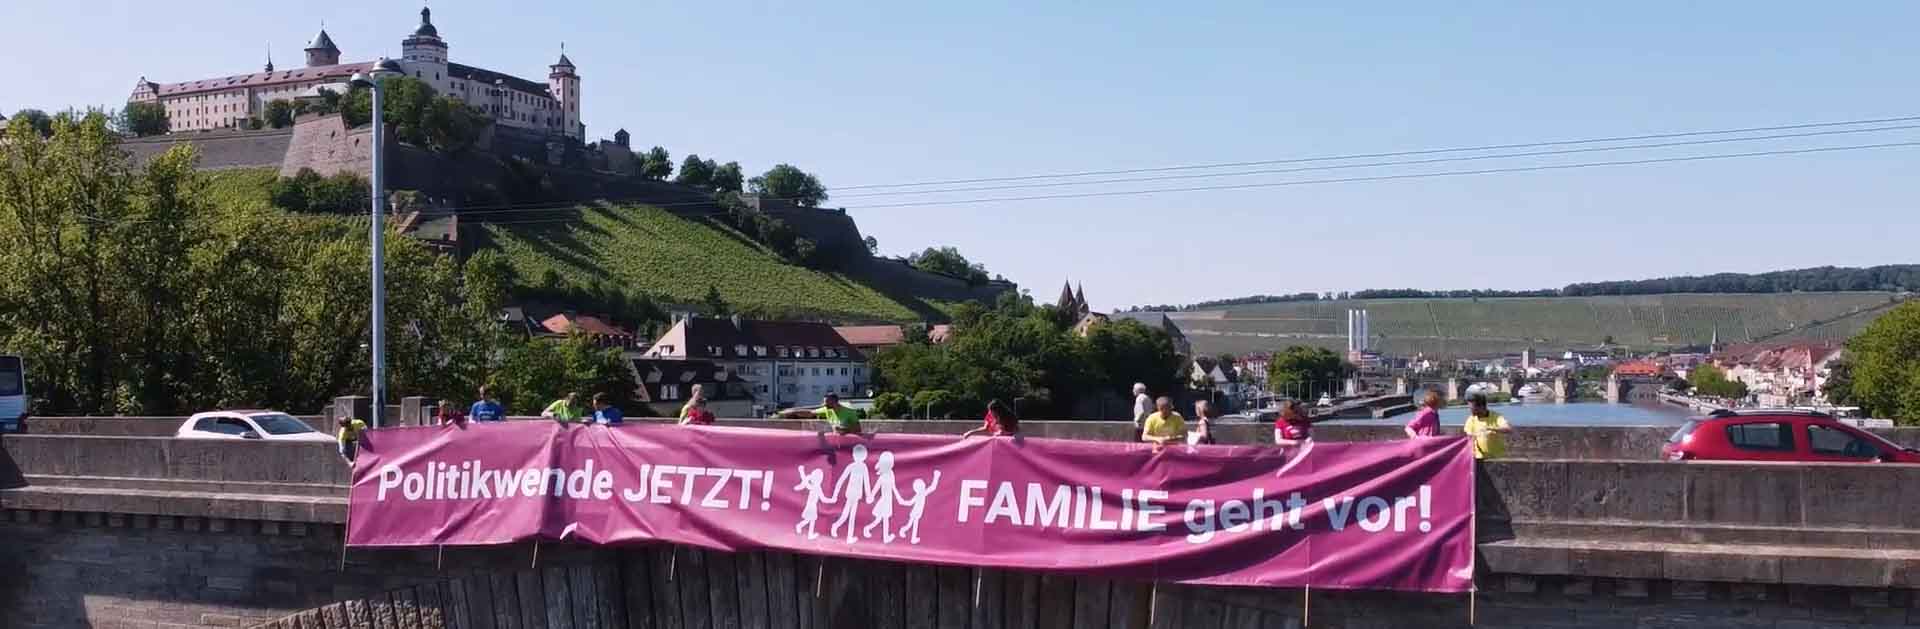 Spettacolare azione pro famiglia in Germania 1